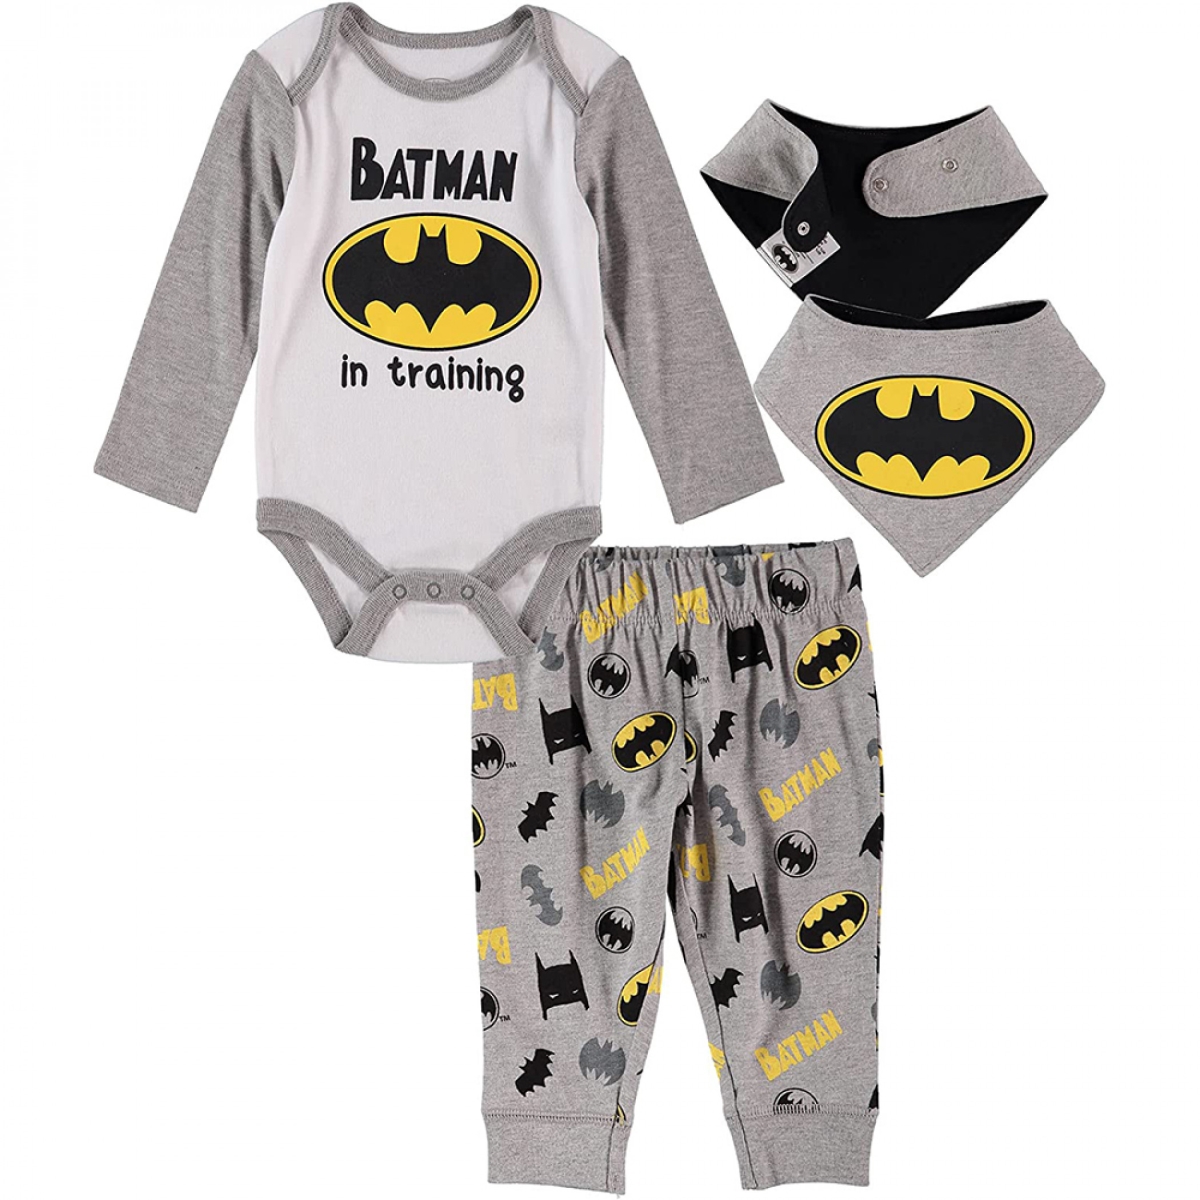 Picture of Batman 822854-6-9months Batman in Training Infant Bodysuit Pant & Bib Set&#44; 6-9 Months - 3 Piece